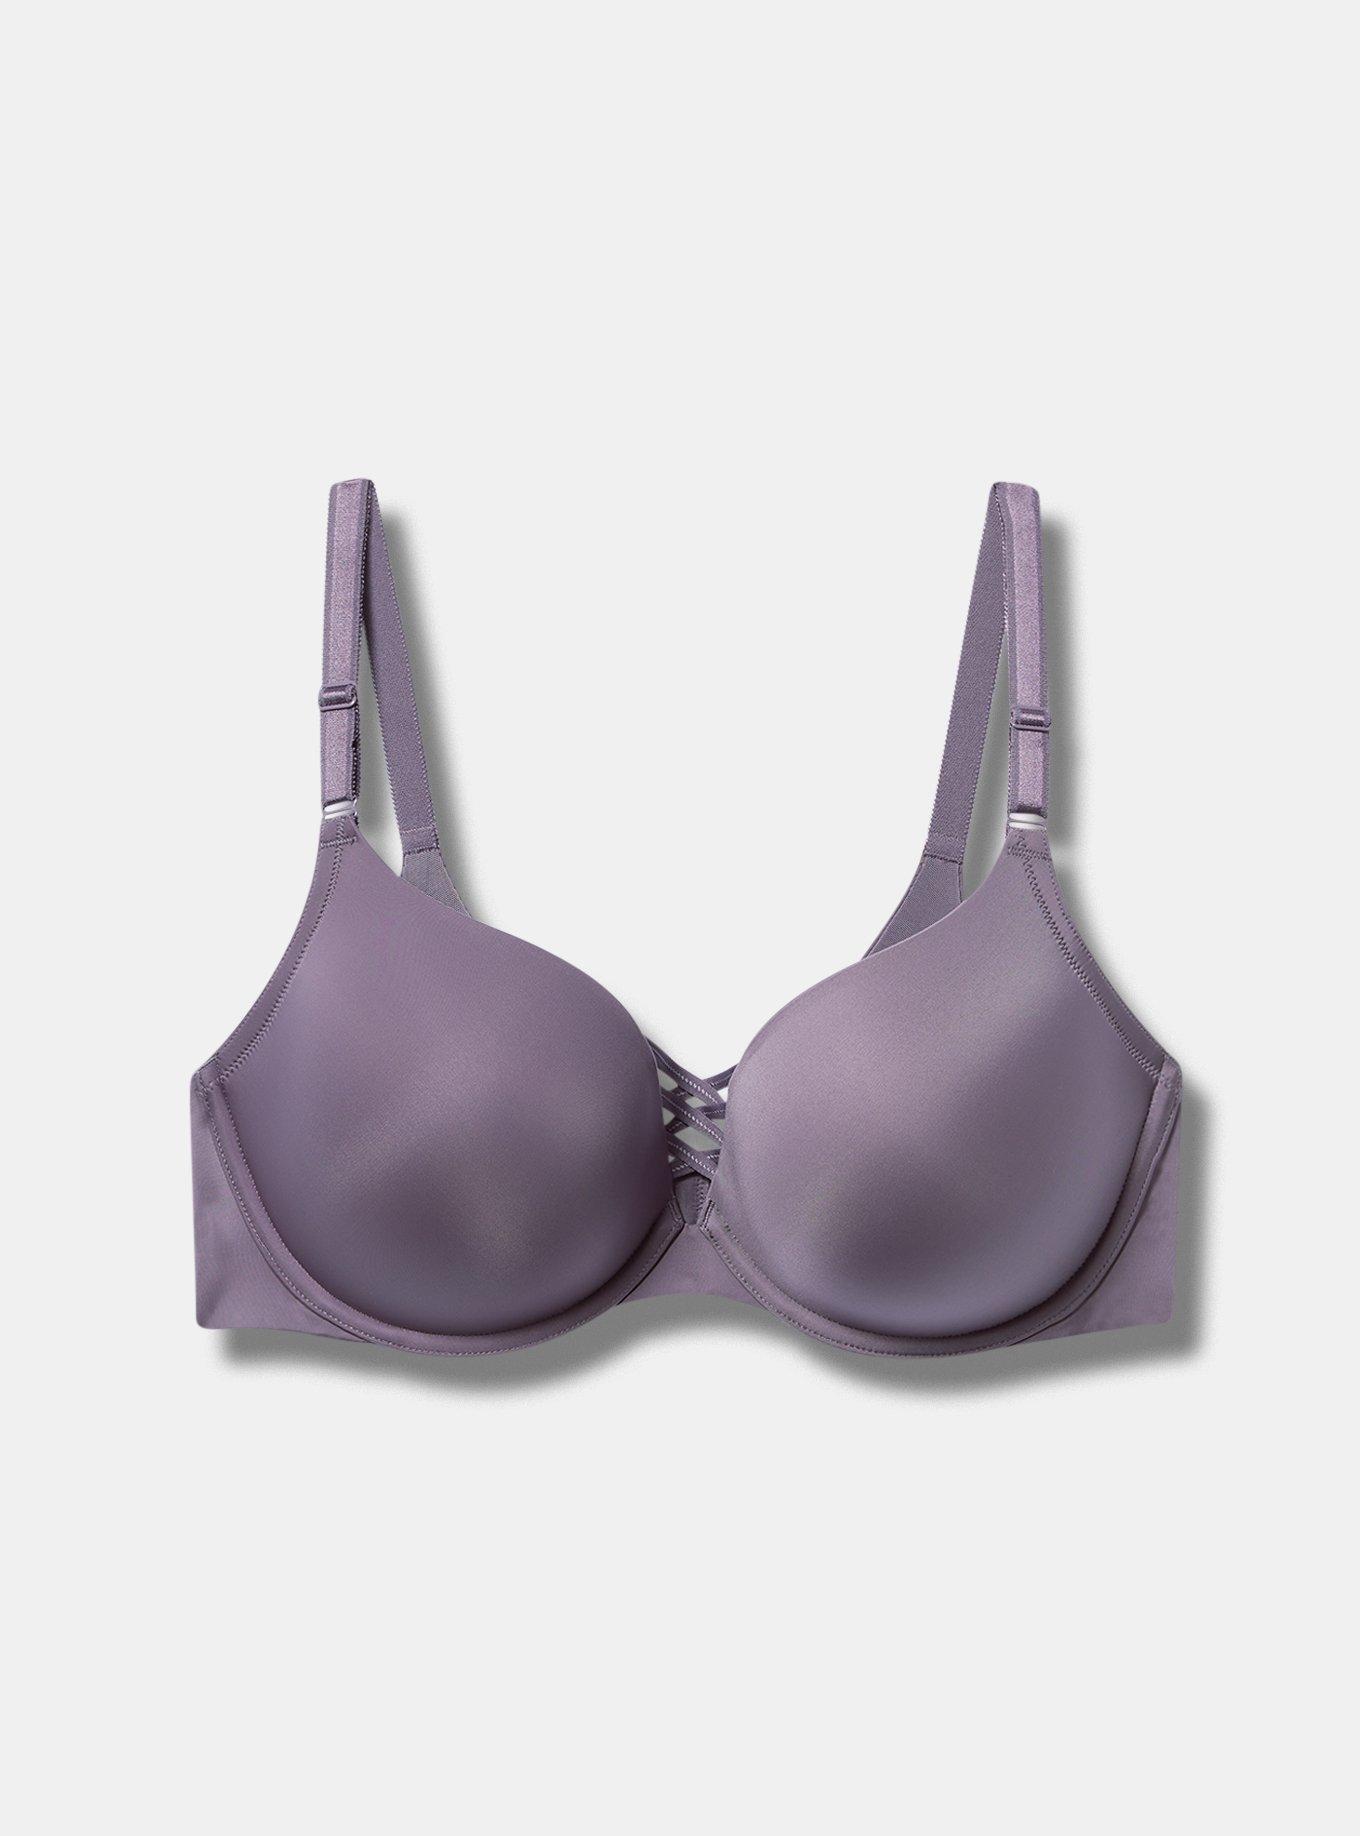 torrid, Intimates & Sleepwear, Torrid Bra Lingerie Underwire Lace Plus  Size 44ddd Purple